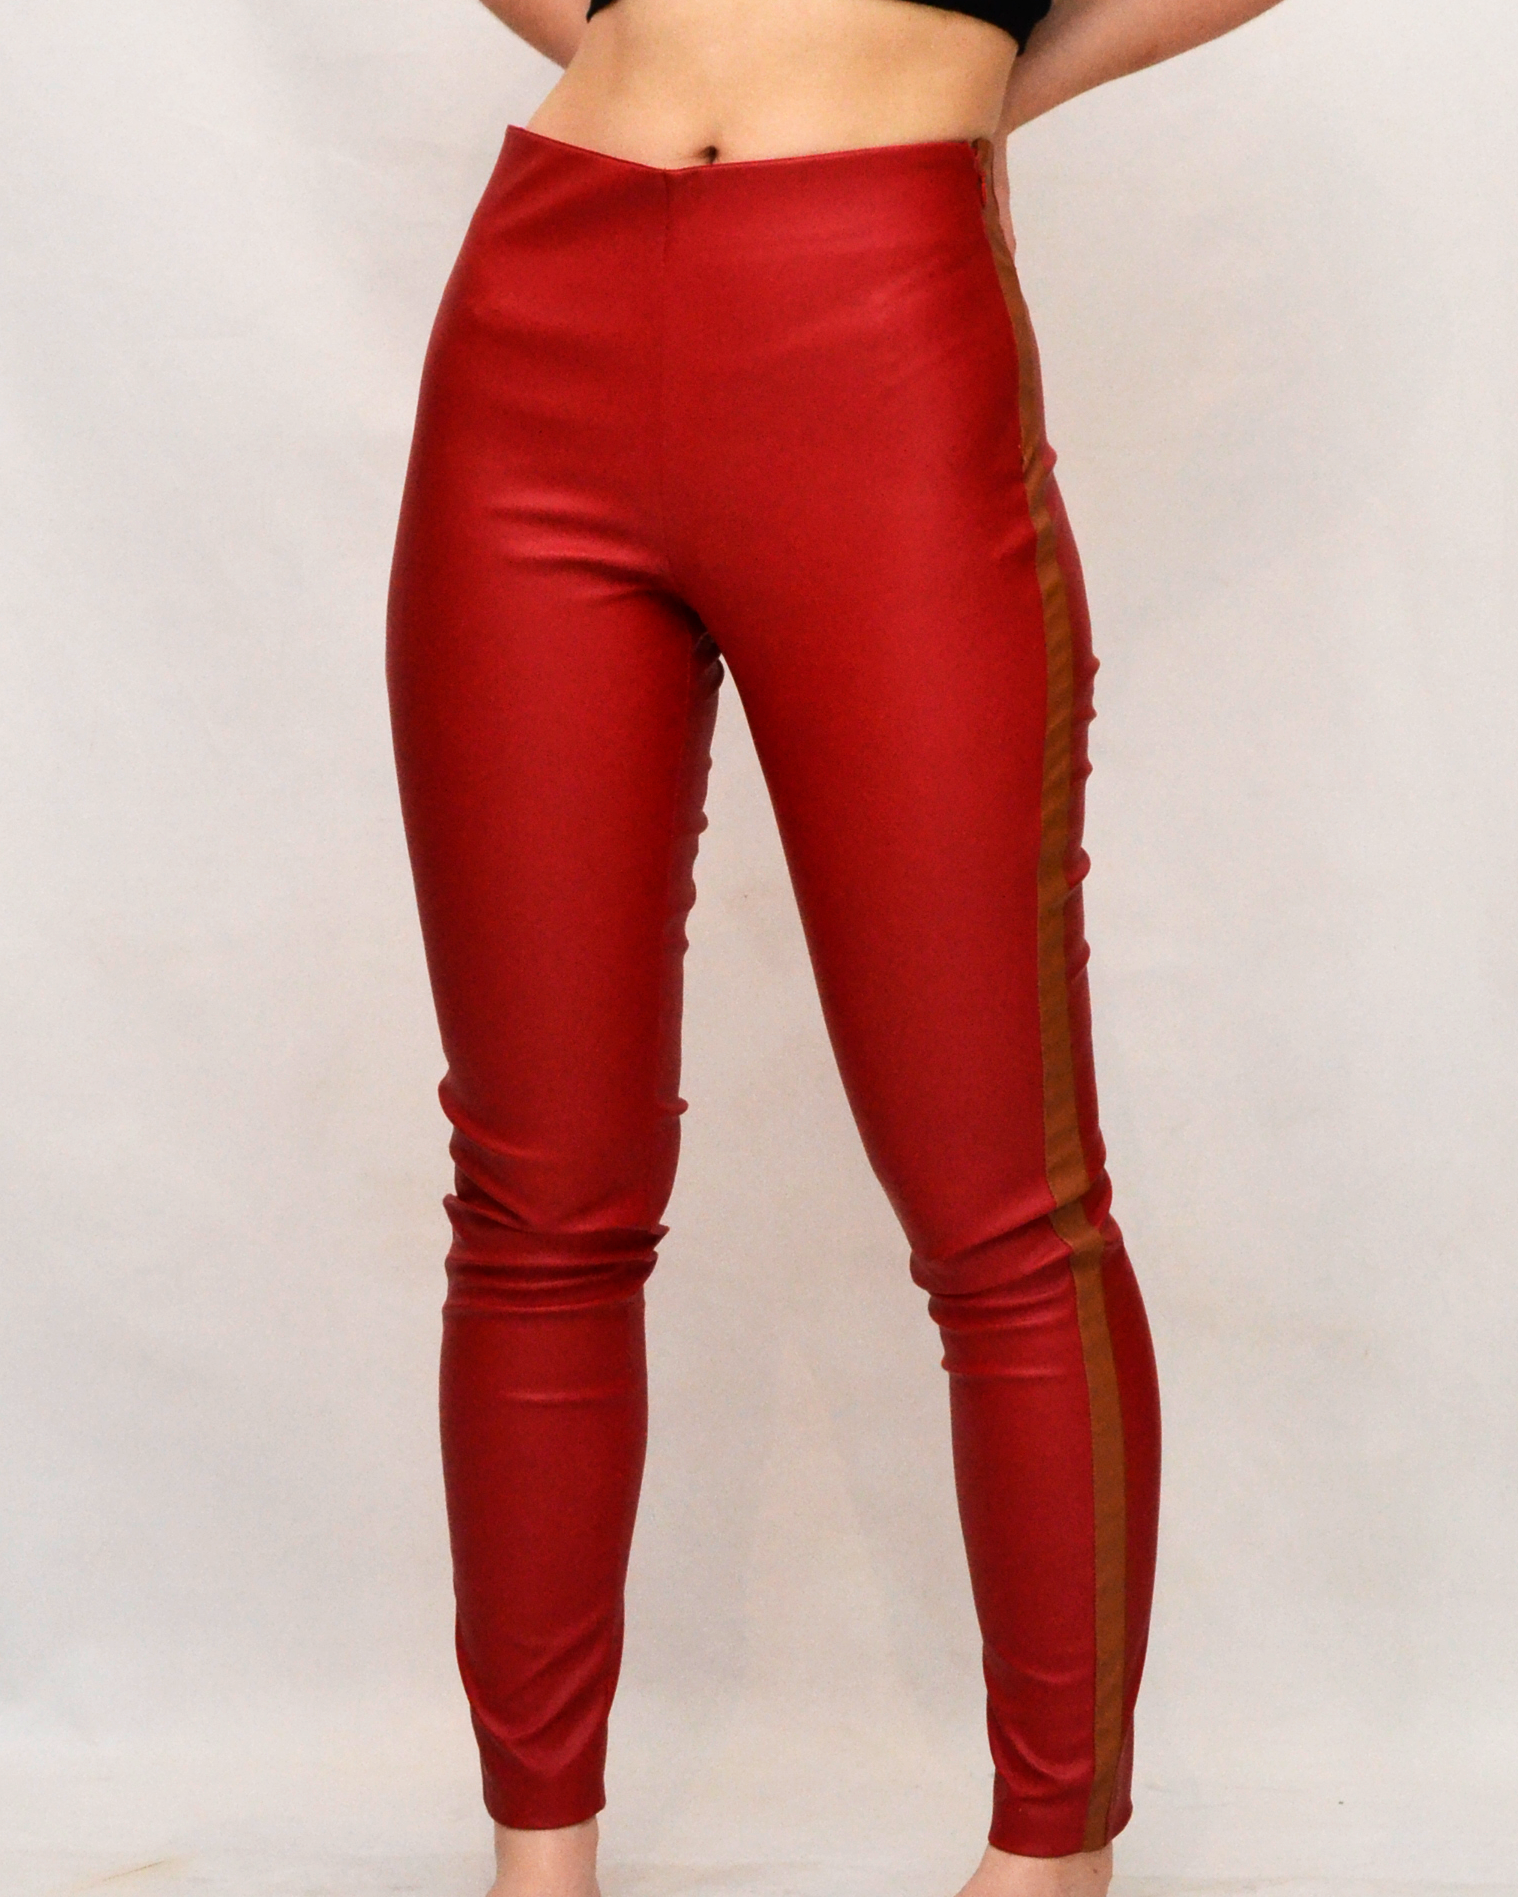 Pantalón Rojo - Genuino